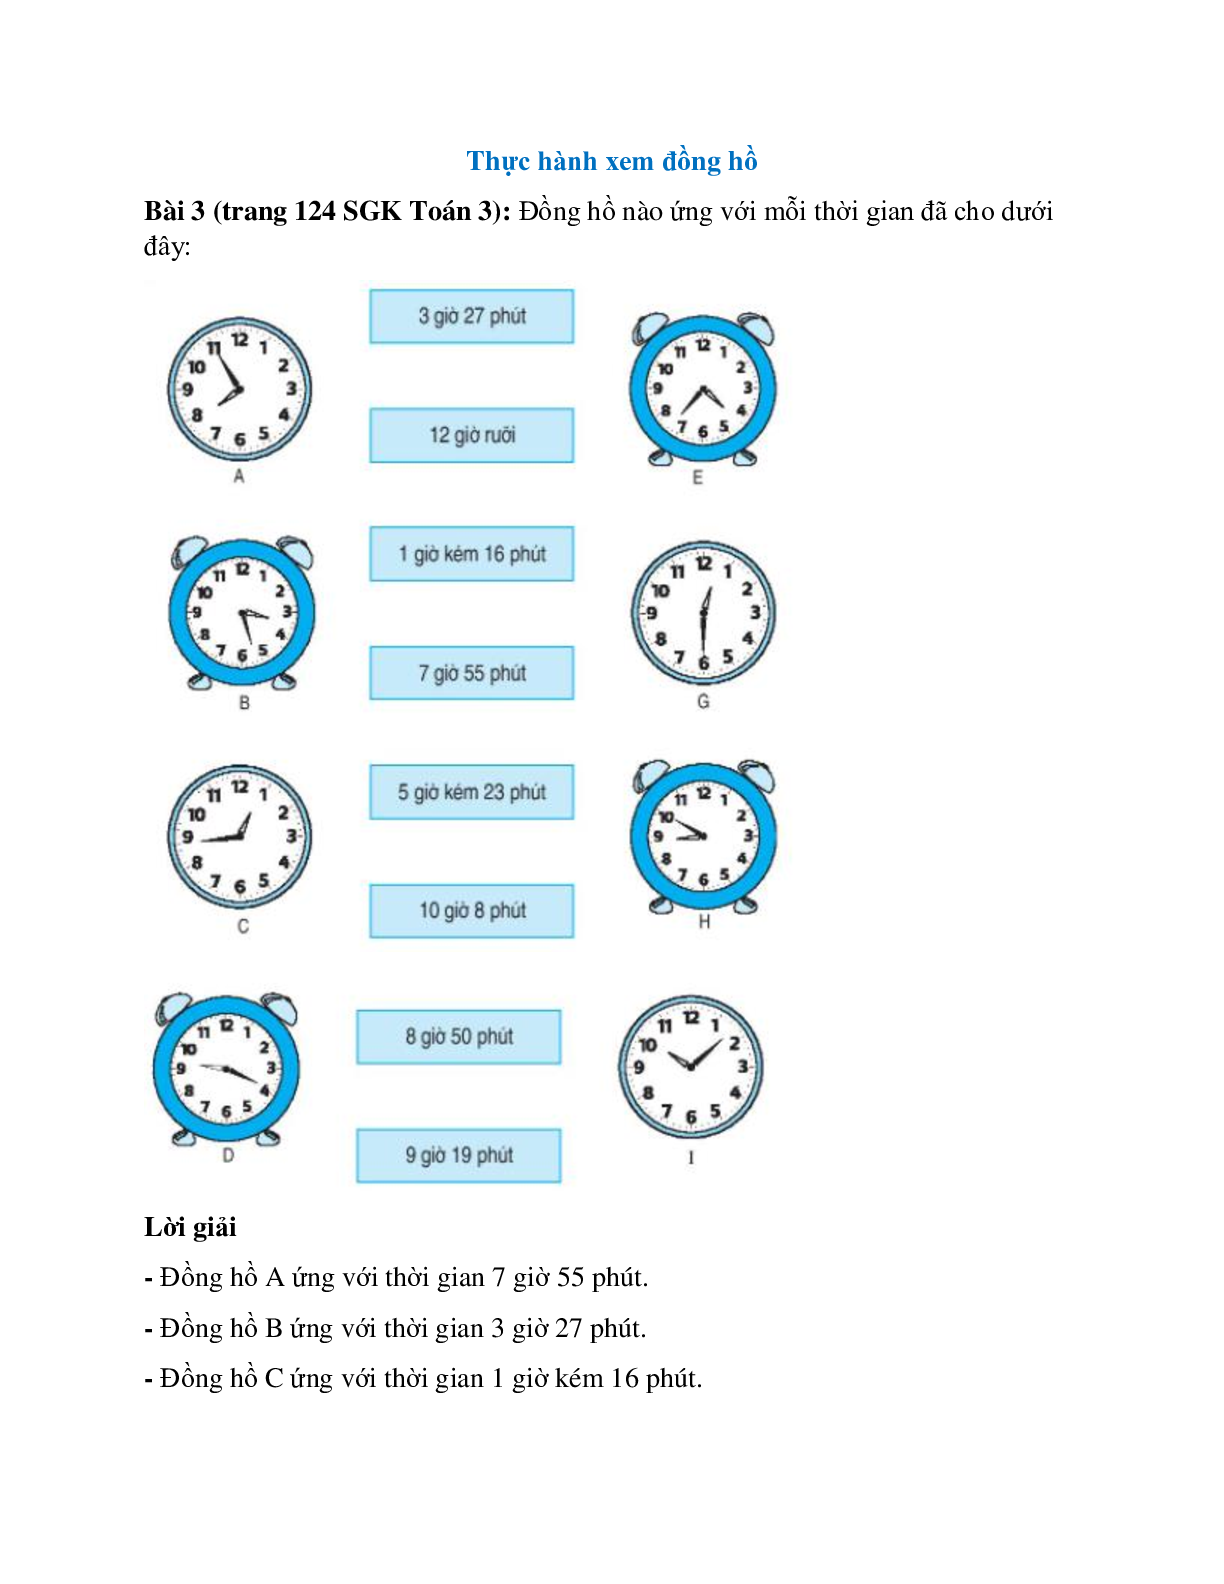 Đồng hồ nào ứng với mỗi thời gian đã cho dưới đây (trang 1)